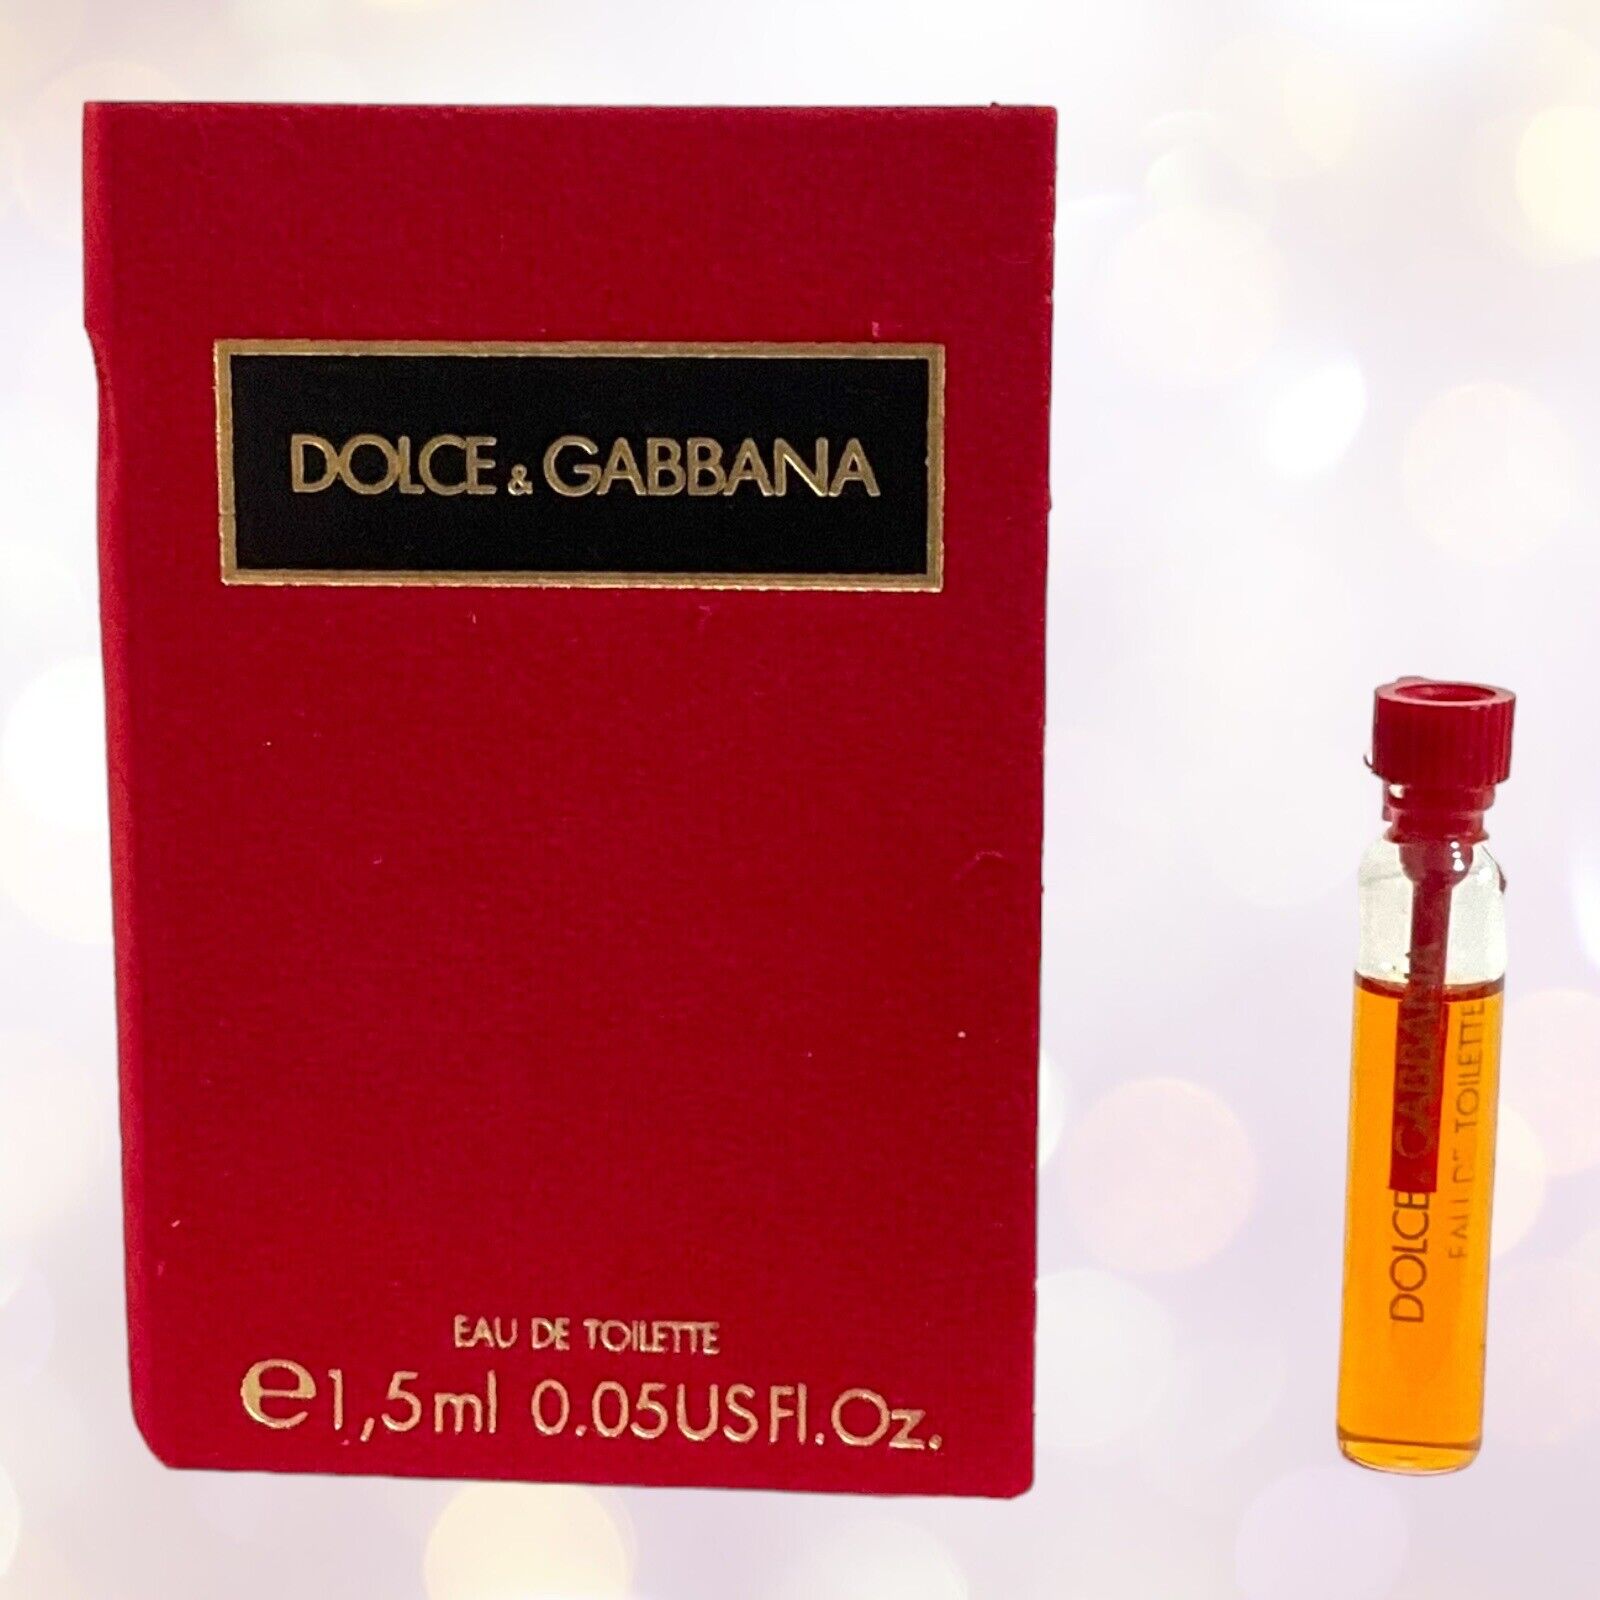 Vtg Dolce & Gabbana RED EDT Eau de Toilette 1.5 ml / 0.05 oz Vial Italy Sample